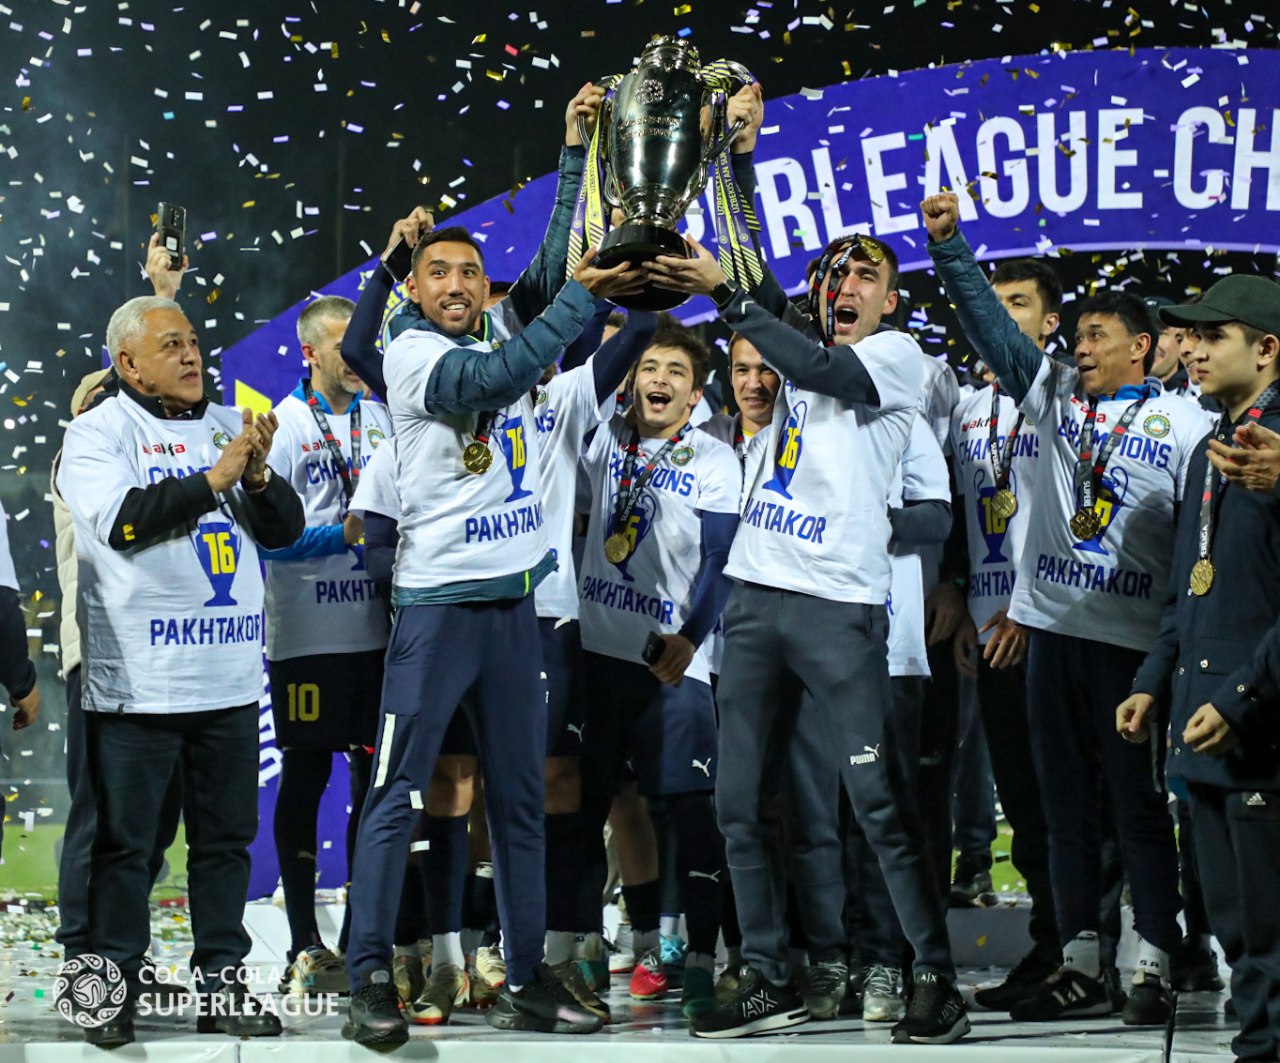 Pakhtakor lifts up Super League trophy